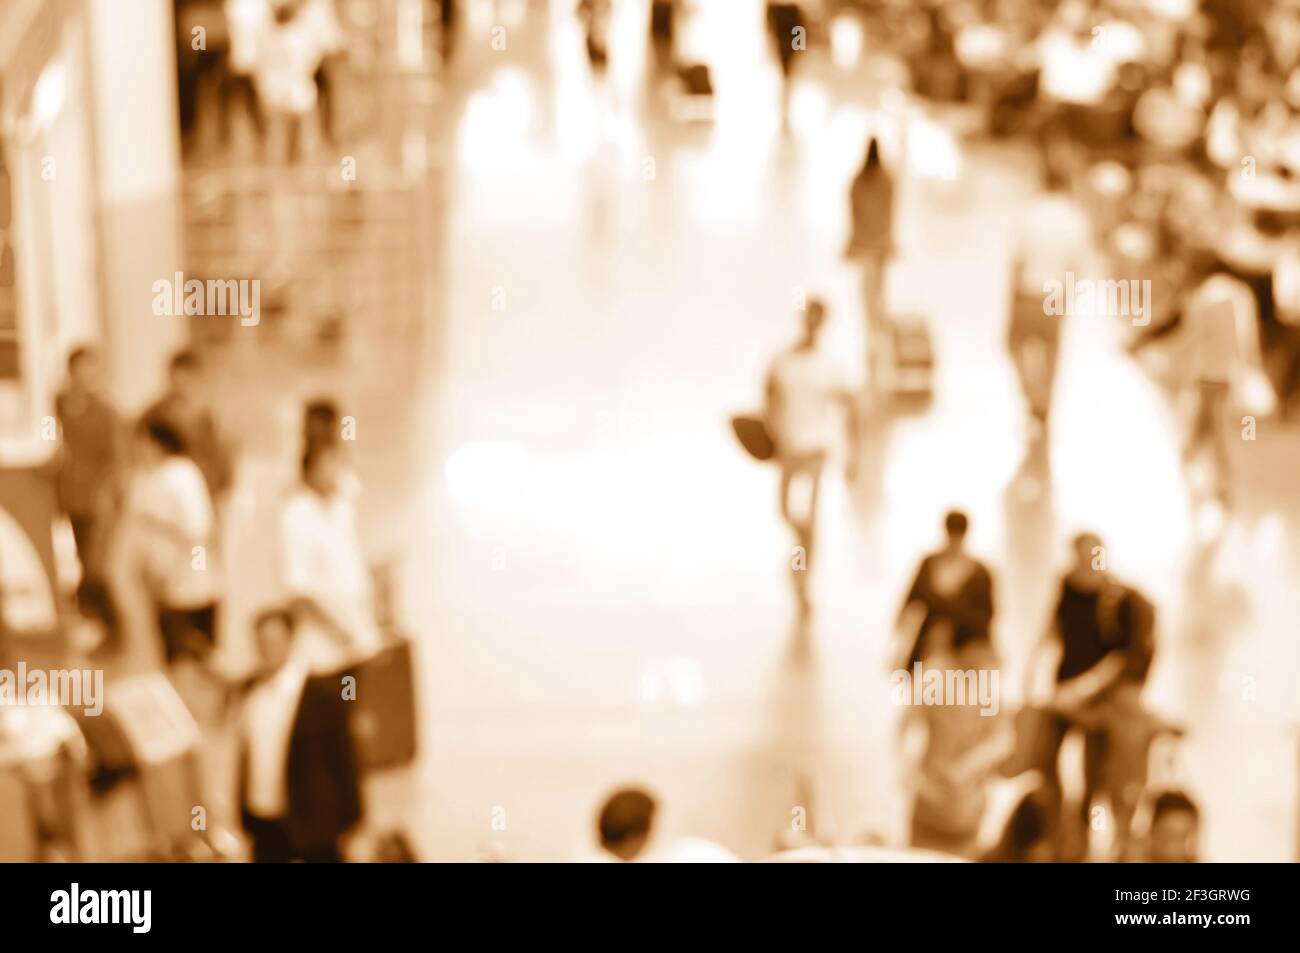 Verschwommene Personen im Flughafenflur in braunem Sepia-Effekt können als Hintergrund verwendet werden Stockfoto